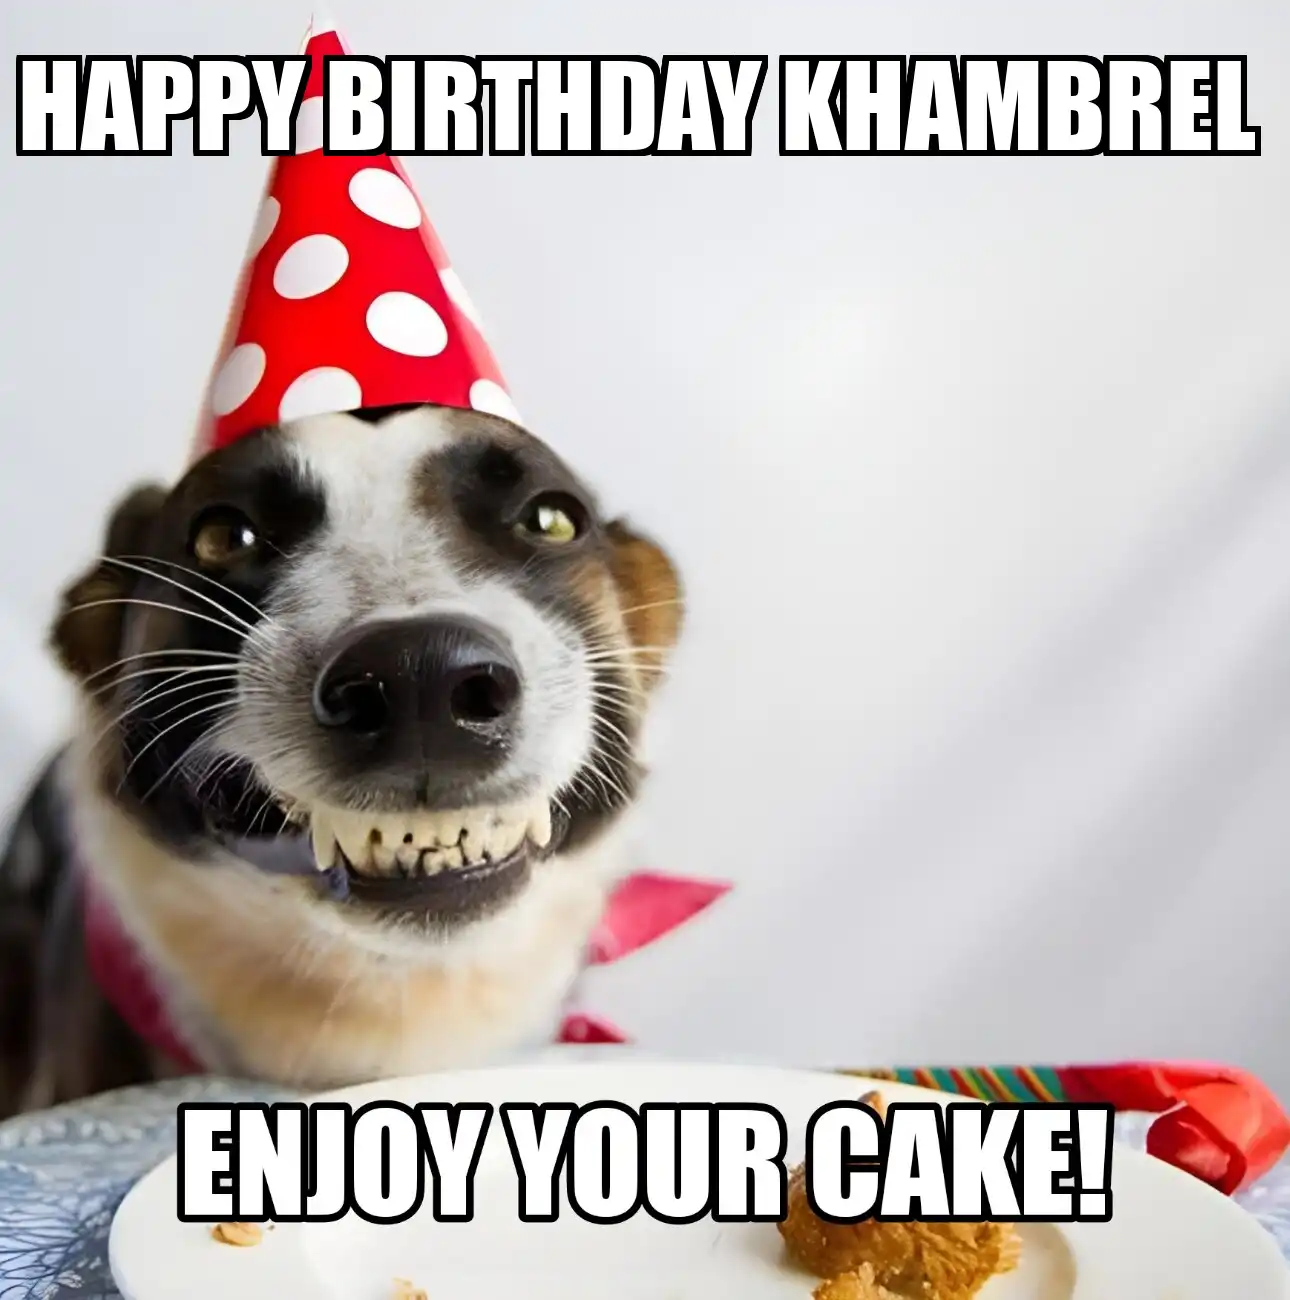 Happy Birthday Khambrel Enjoy Your Cake Dog Meme